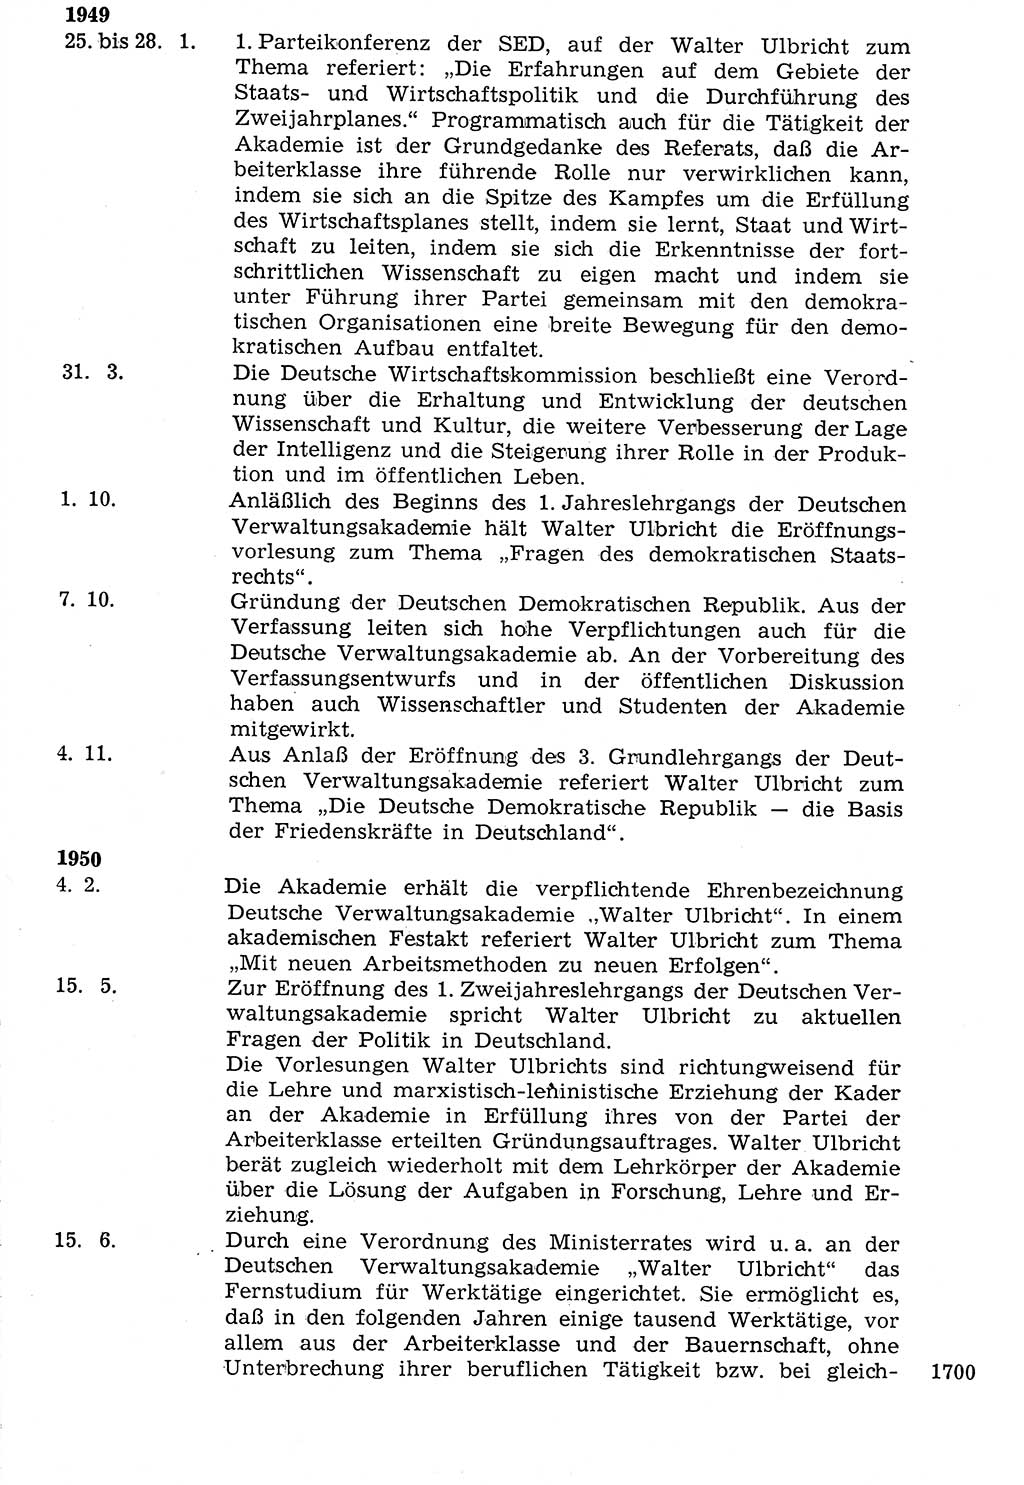 Staat und Recht (StuR), 17. Jahrgang [Deutsche Demokratische Republik (DDR)] 1968, Seite 1700 (StuR DDR 1968, S. 1700)